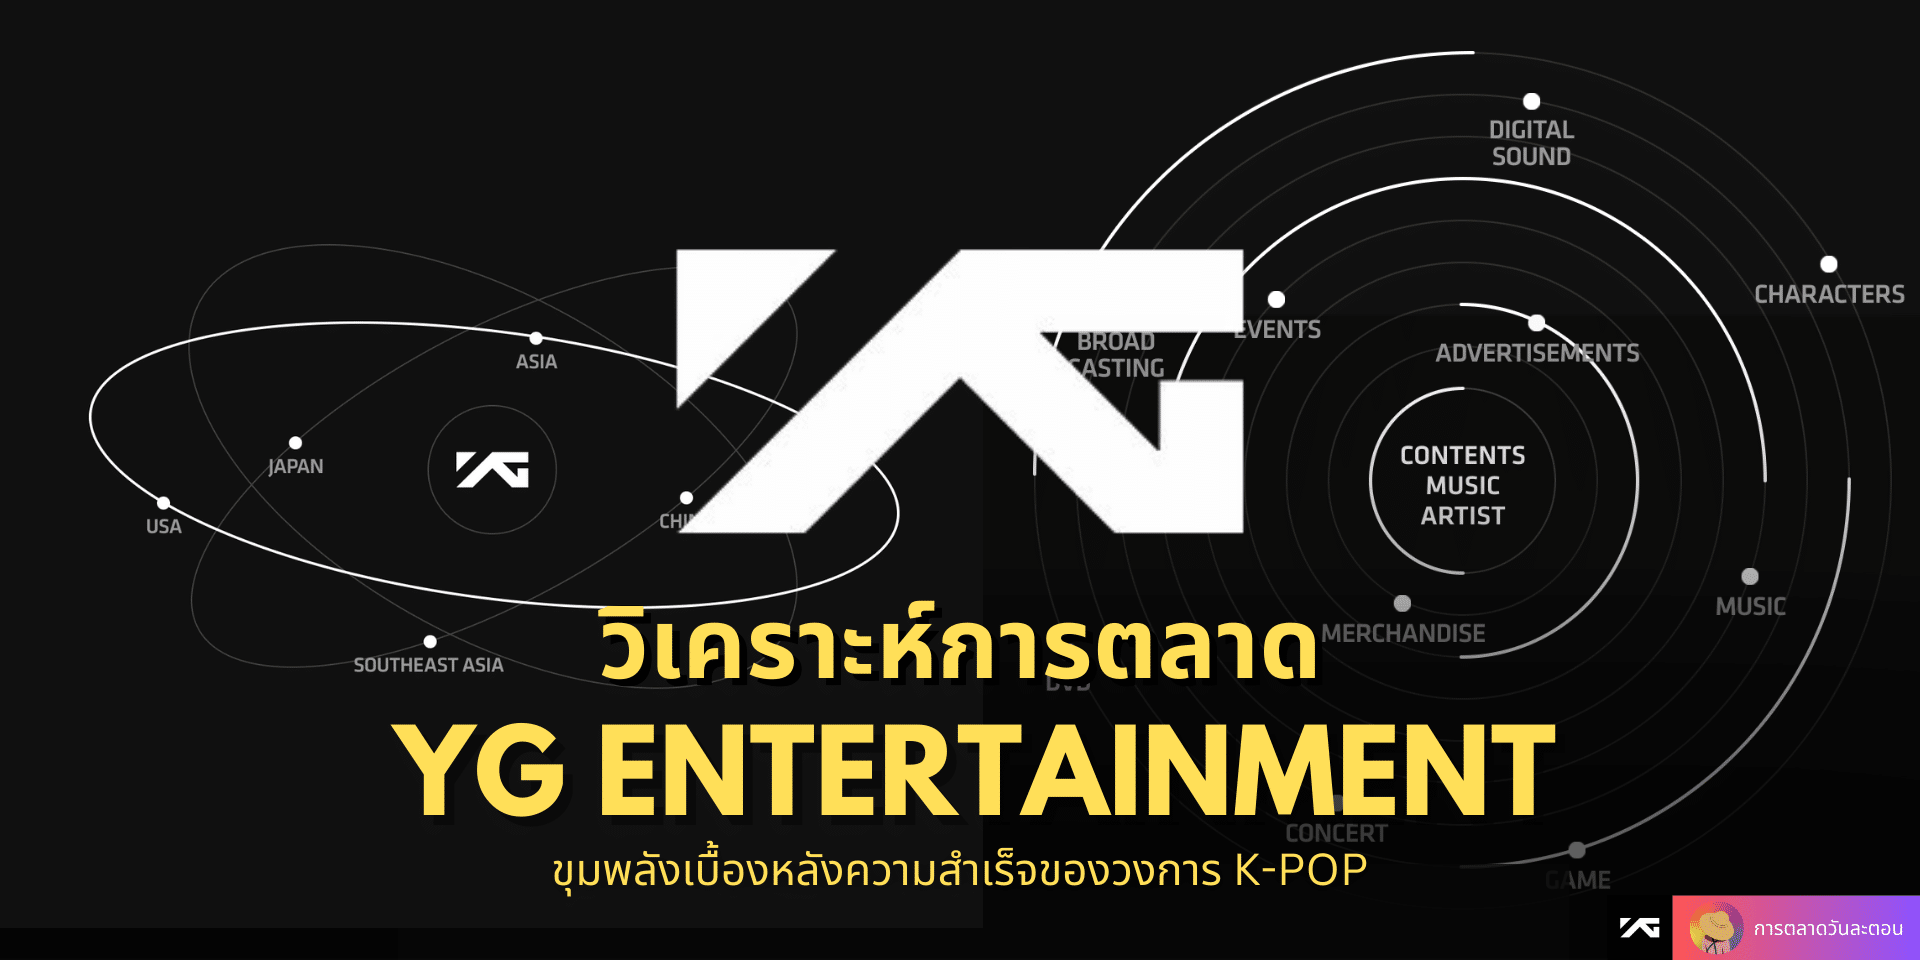 วิเคราะห์ การตลาด YG Entertainment ขุมพลังเบื้องหลังความสำเร็จของวงการ K-Pop